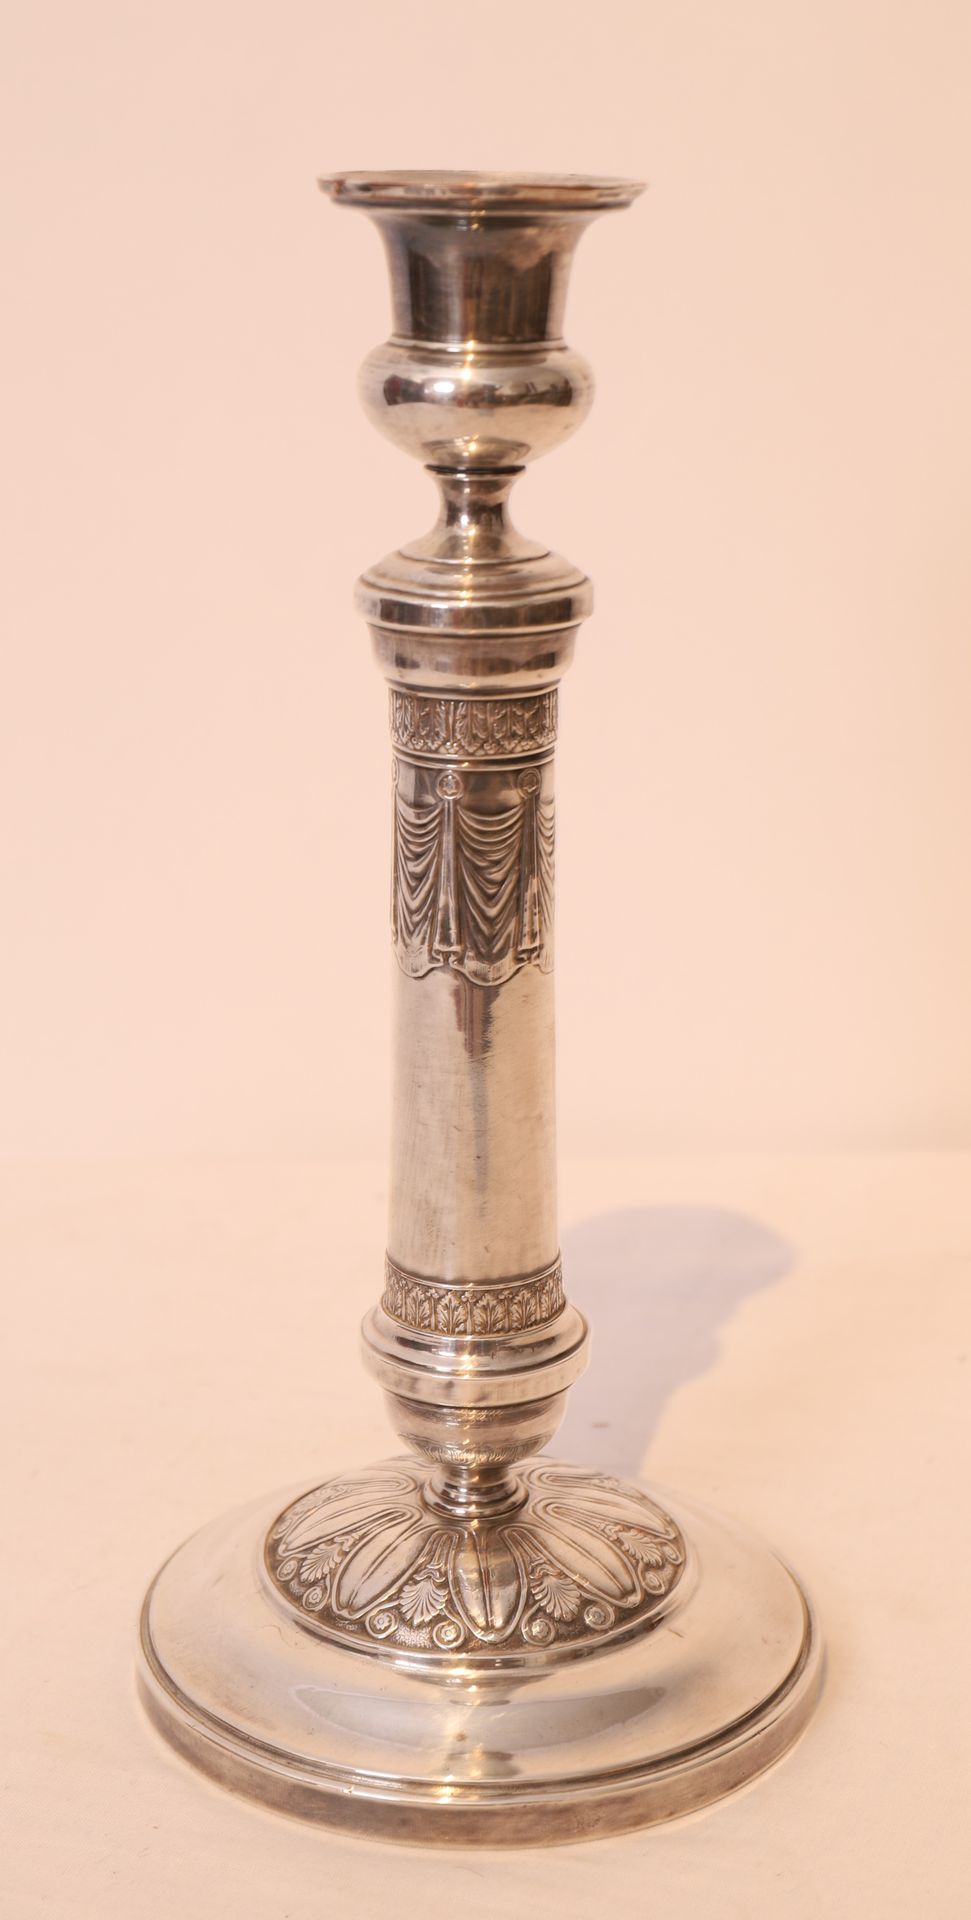 Null 镀银铜烛台

饰有棕榈花纹、卷轴和落地窗帘

20世纪初的英国作品

高：27厘米